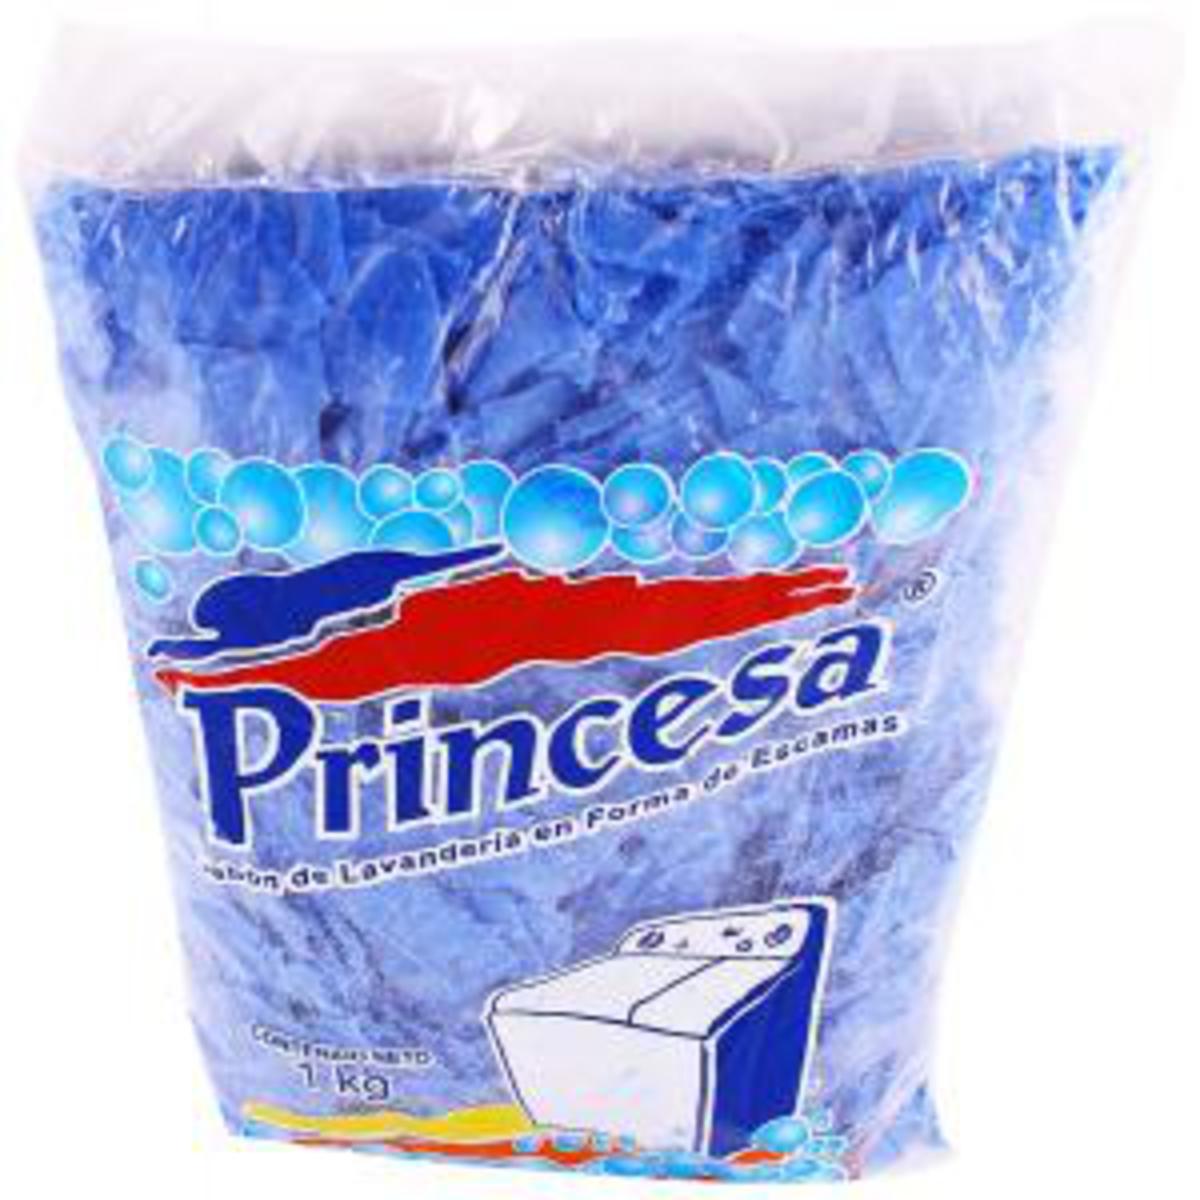 Jabon Princesa Escamas Azul en canasta en casa